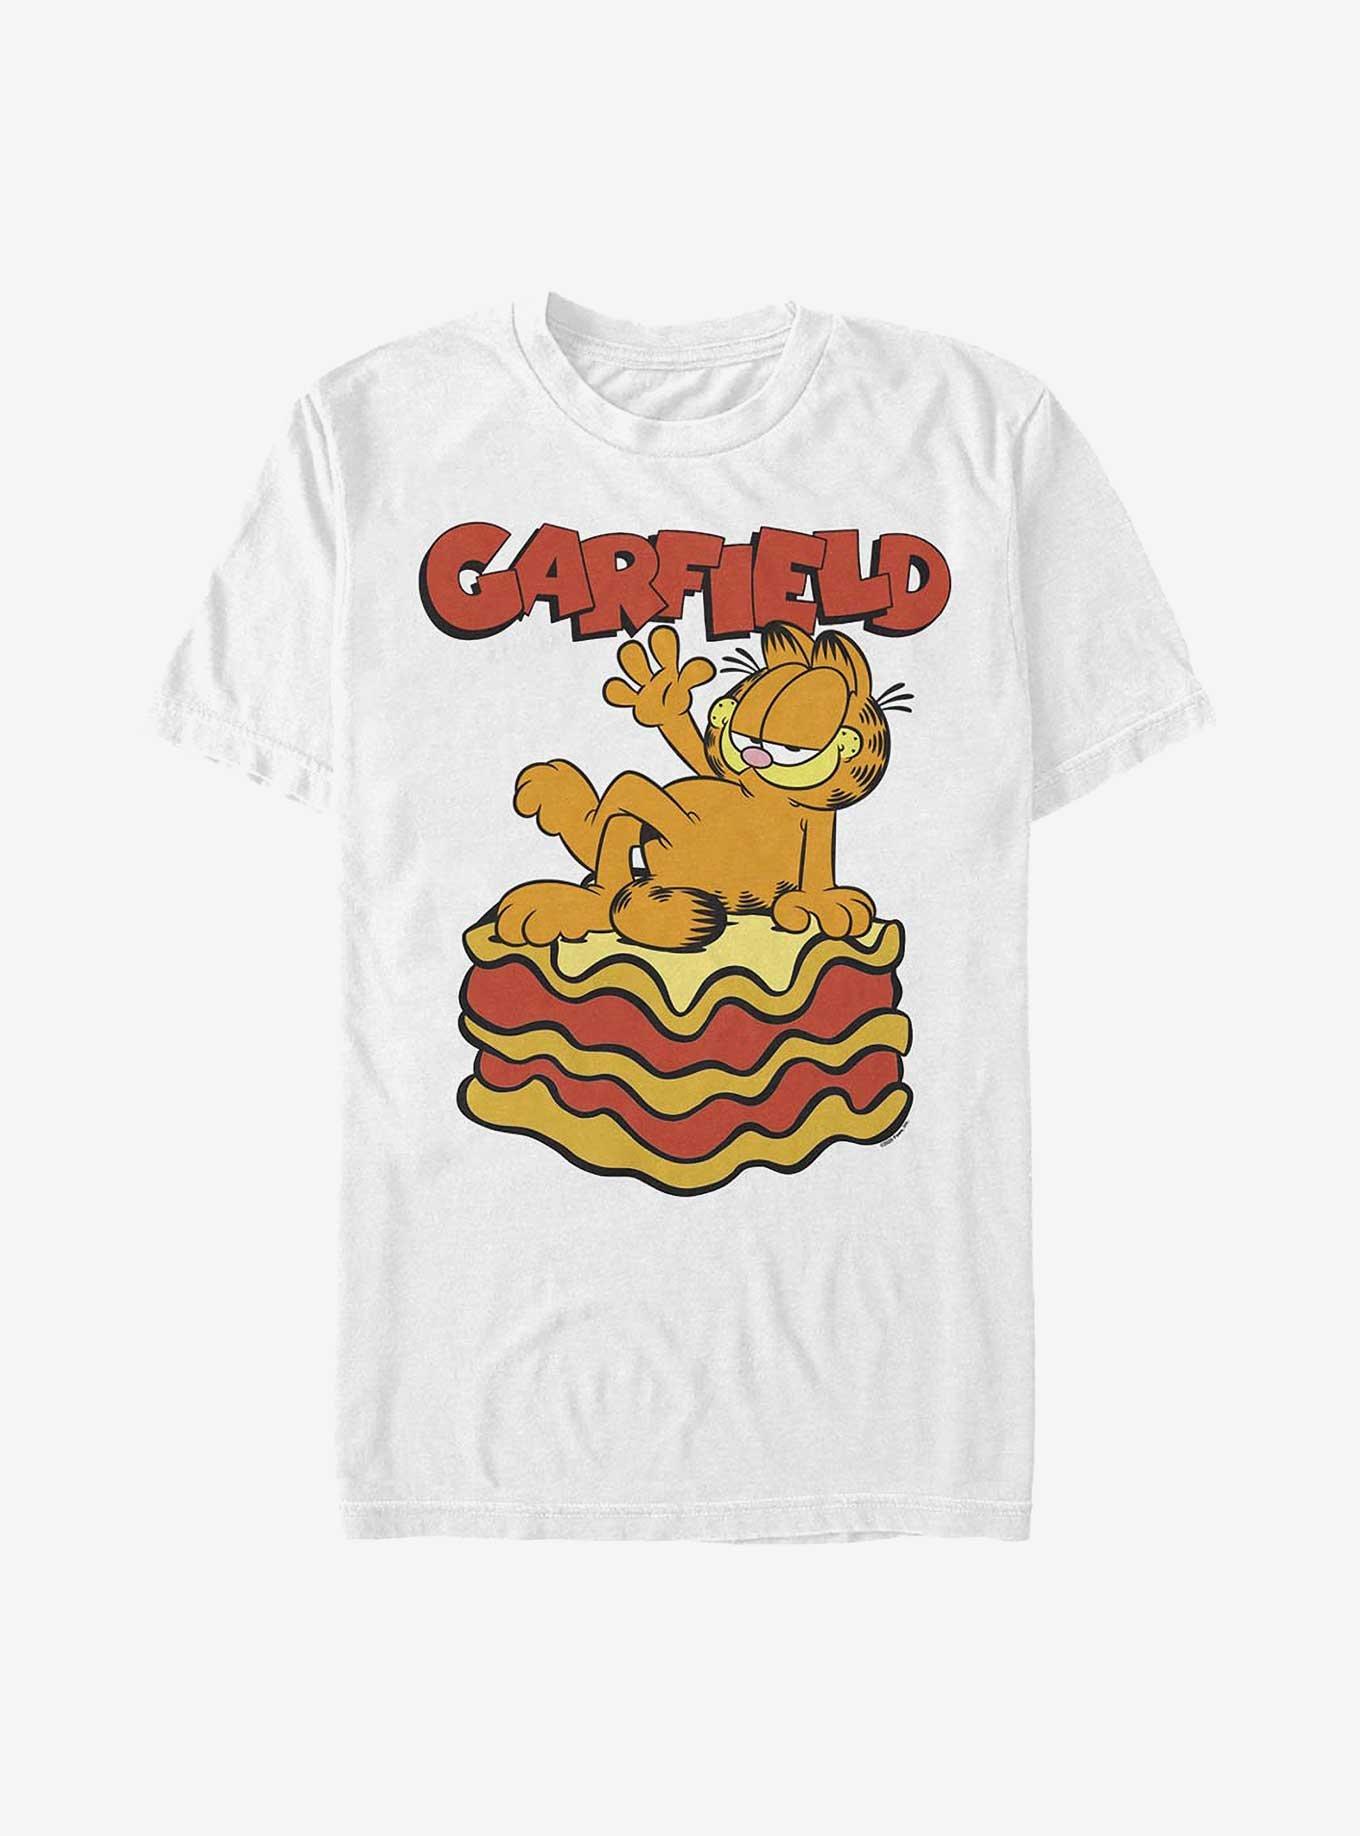 Garfield King Of Lasagna T-Shirt, WHITE, hi-res